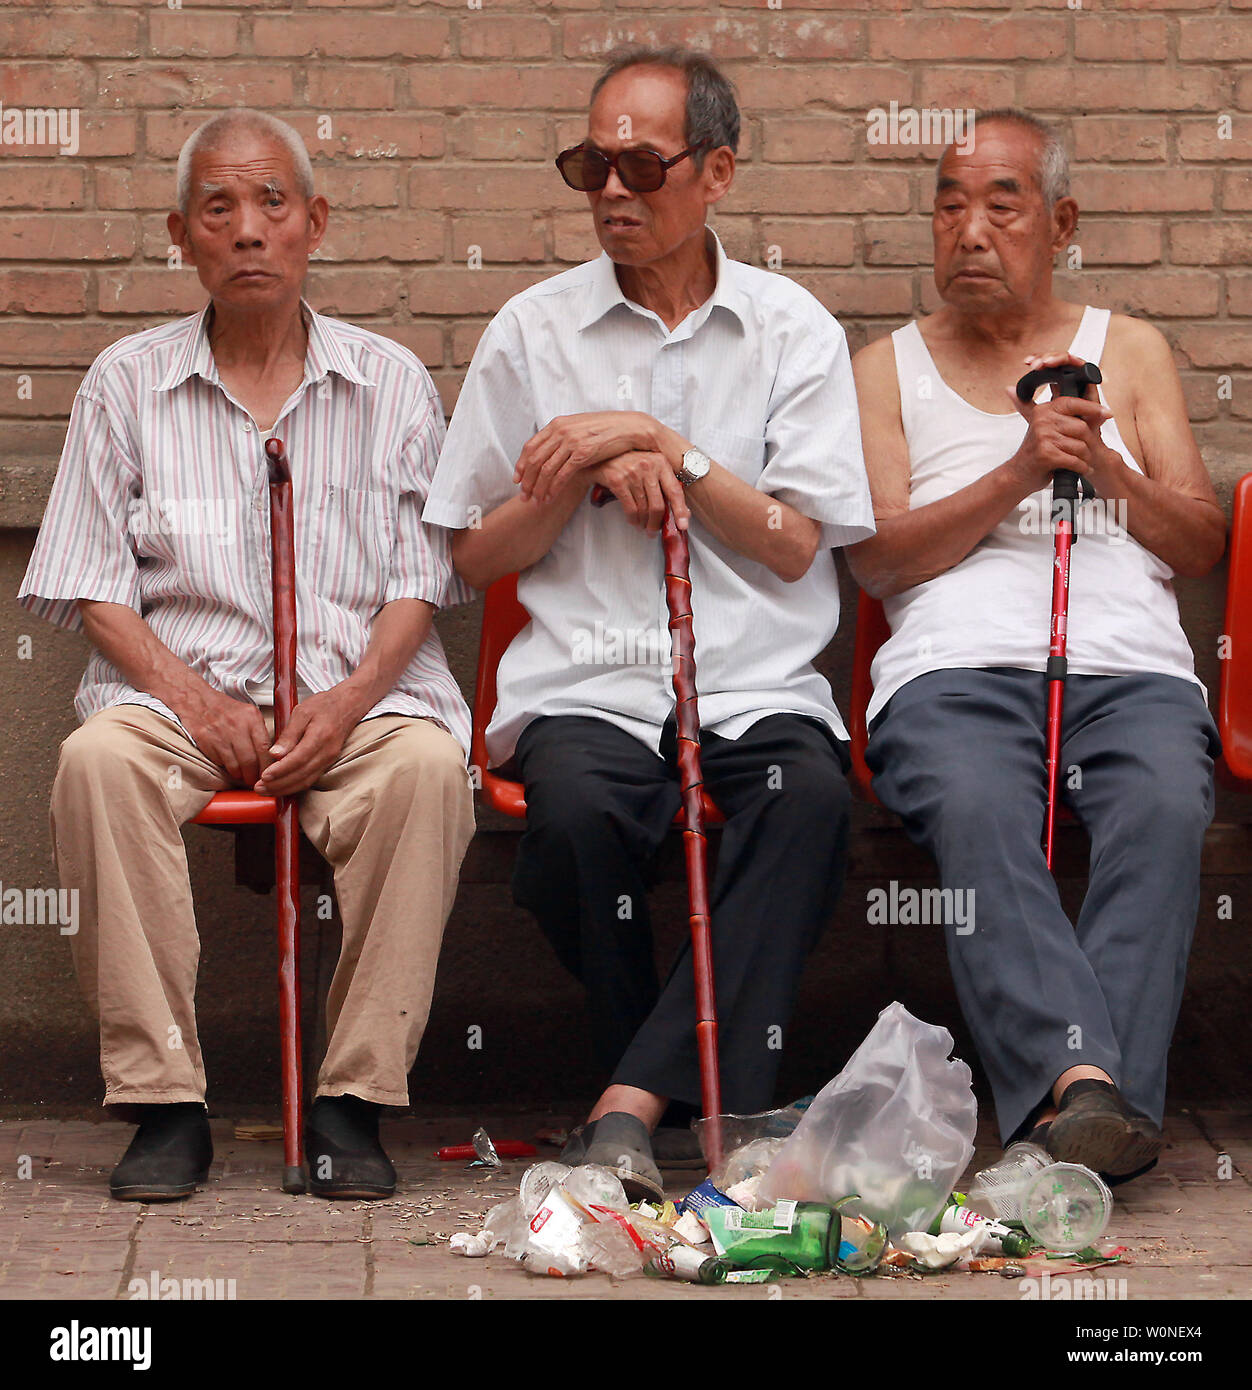 Personnes âgées les Chinois s'asseoir à l'ombre comme ils regardent les allées-et-venues dans leur quartier à Xi'an, la capitale de la province de Shaanxi, le 1 juillet 2012. La population de la Chine est le grisonnement de plus en plus vite, ce qui soulève des inquiétudes sur l'augmentation des pressions économiques et sociales dans le pays le plus peuplé du monde. En novembre 2010, la Chine avait 178 millions de personnes de plus de 60 ans, dont 119 millions ont plus de 65 ans. Qui représente plus de 22 pour cent de la population totale, et la Chine est le seul pays sur terre avec plus de100 millions de personnes âgées. UPI/Stephen Shaver Banque D'Images